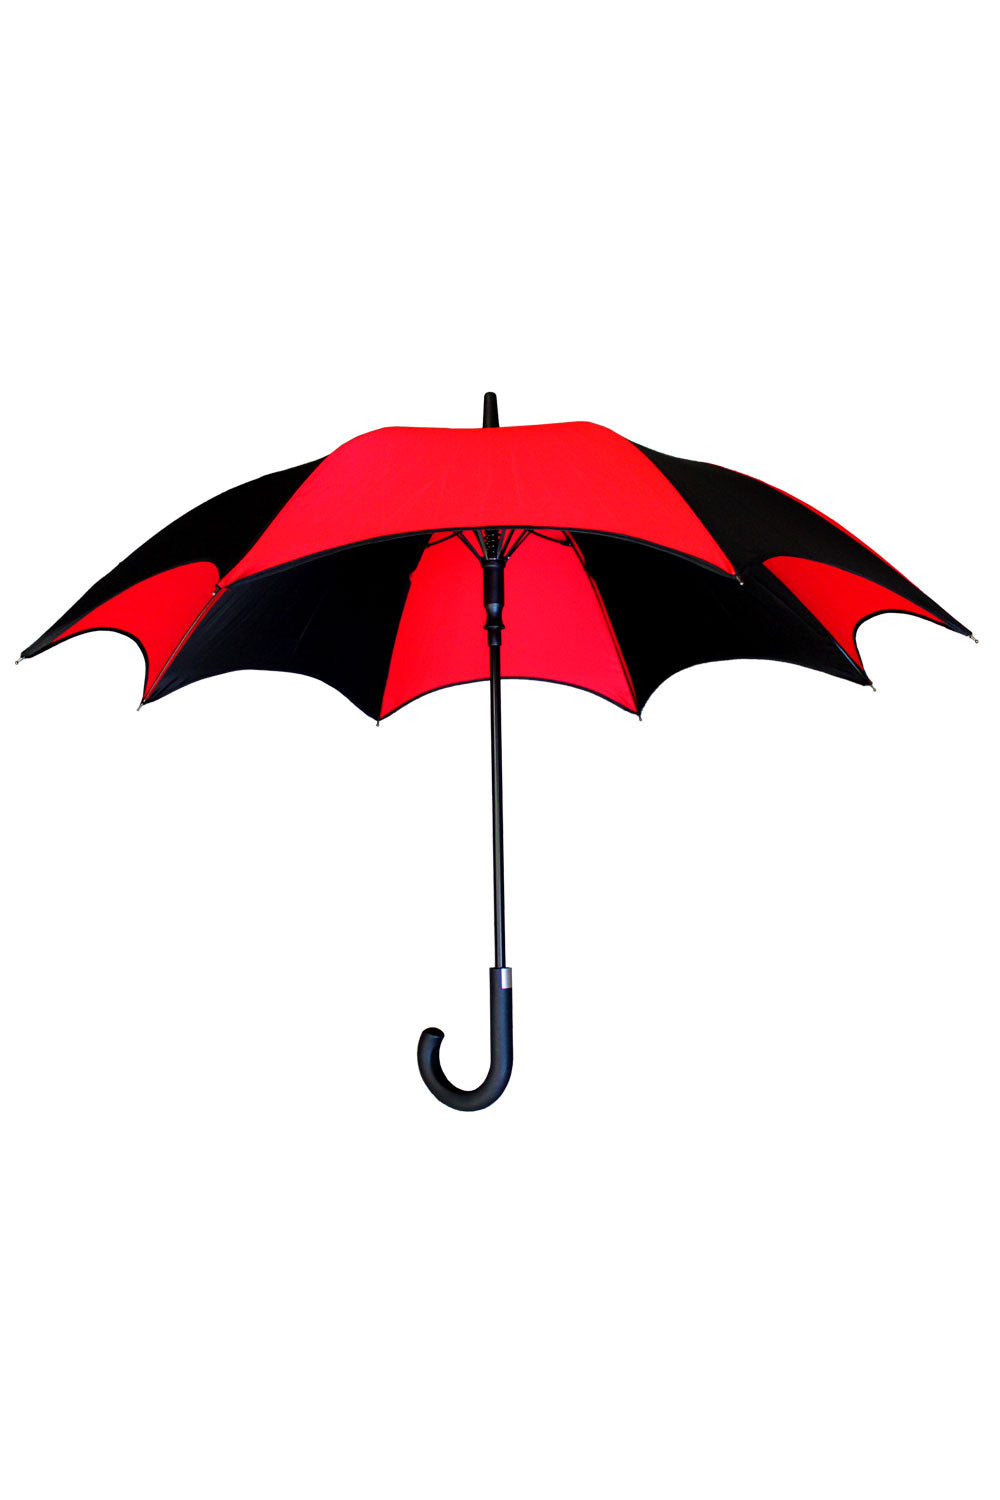 black and red striped umbrella